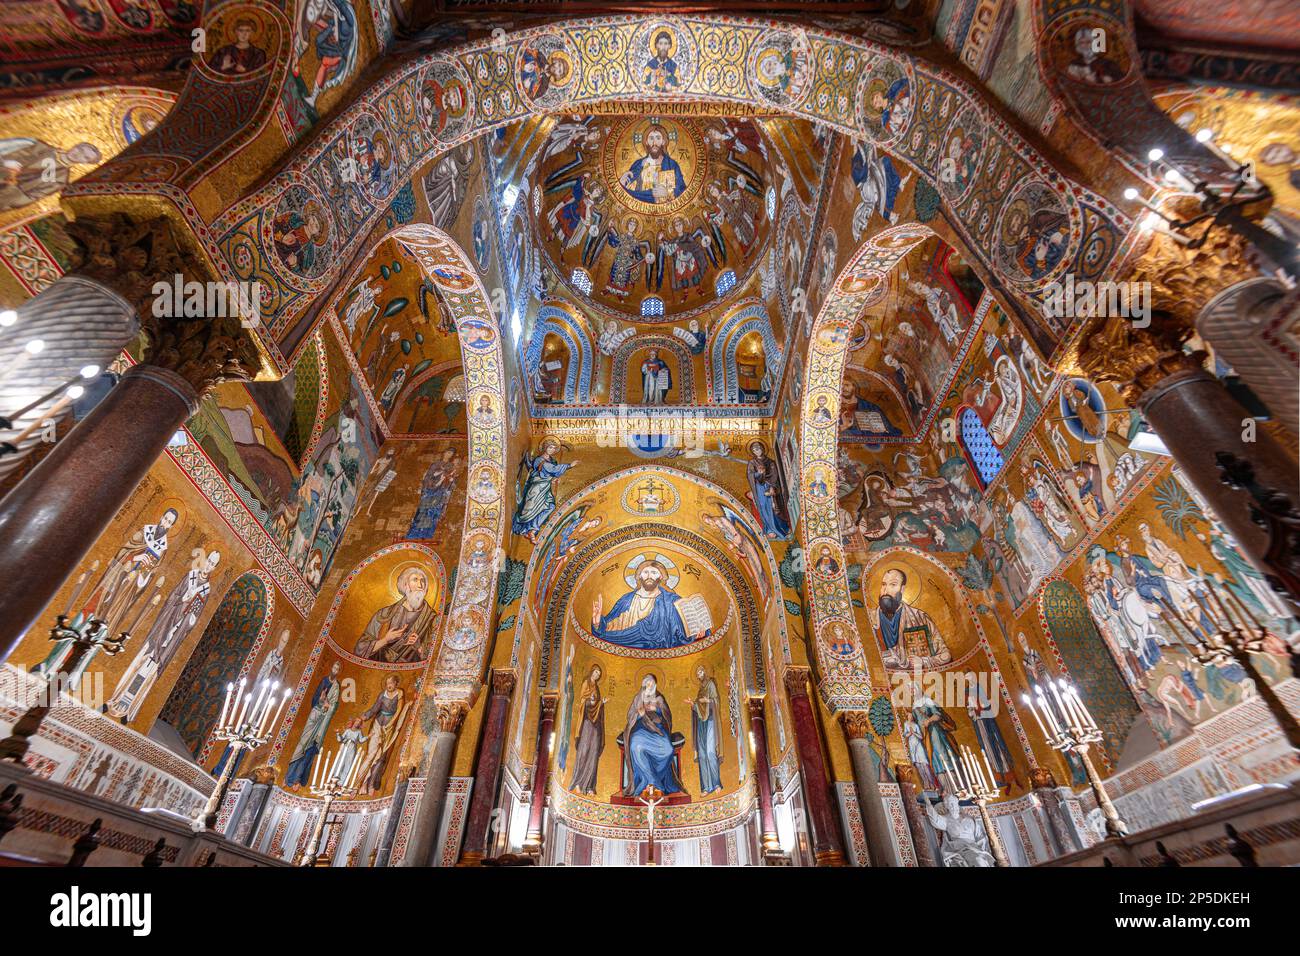 PALERMO, ITALY - NOVEMBER 9, 2022: The Cappella Palatina mosaics. The chapel dates to the 12th century. Stock Photo